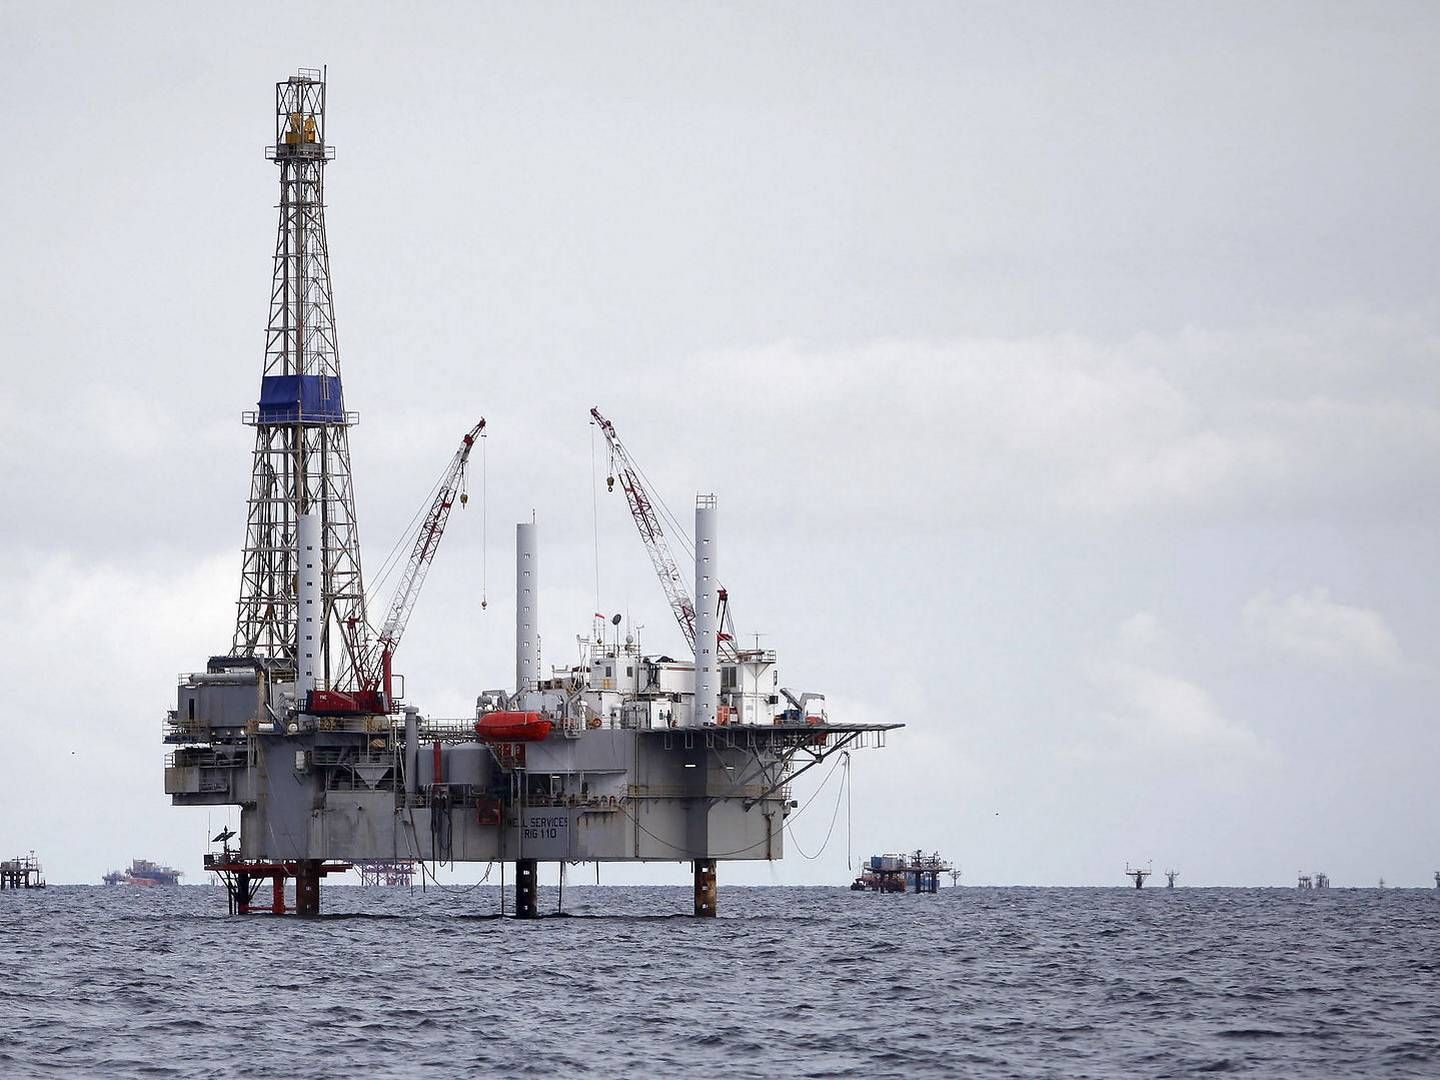 Dykket i olieprisen i 2014 sendte drillingbranchen ud i en krise, hvor aktiviteten faldt og antallet af rigge blev sendt ud af drift | Foto: Andrea De Silva/Reuters/Ritzau Scanpix